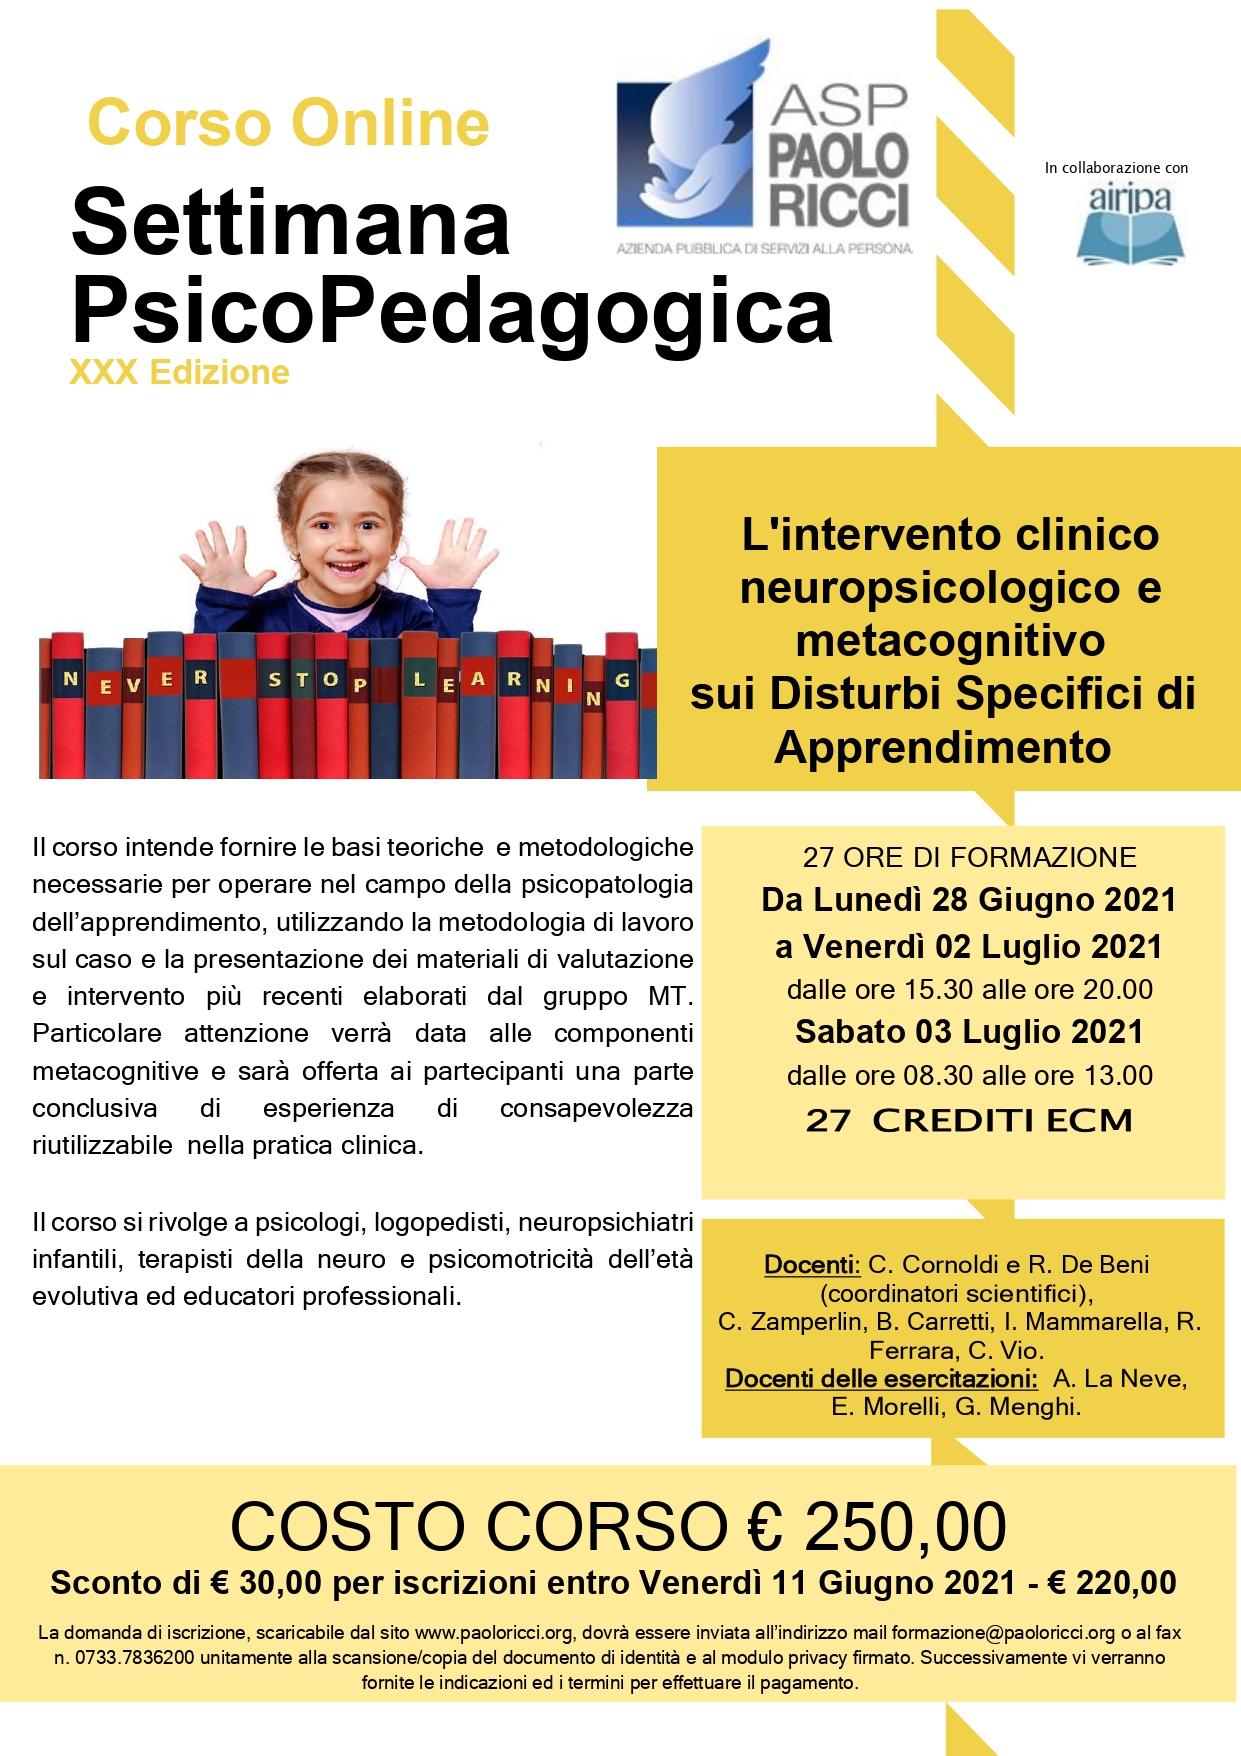 Settimana Psicopedagogica 2021 - DSA_organized (4)_page-0001